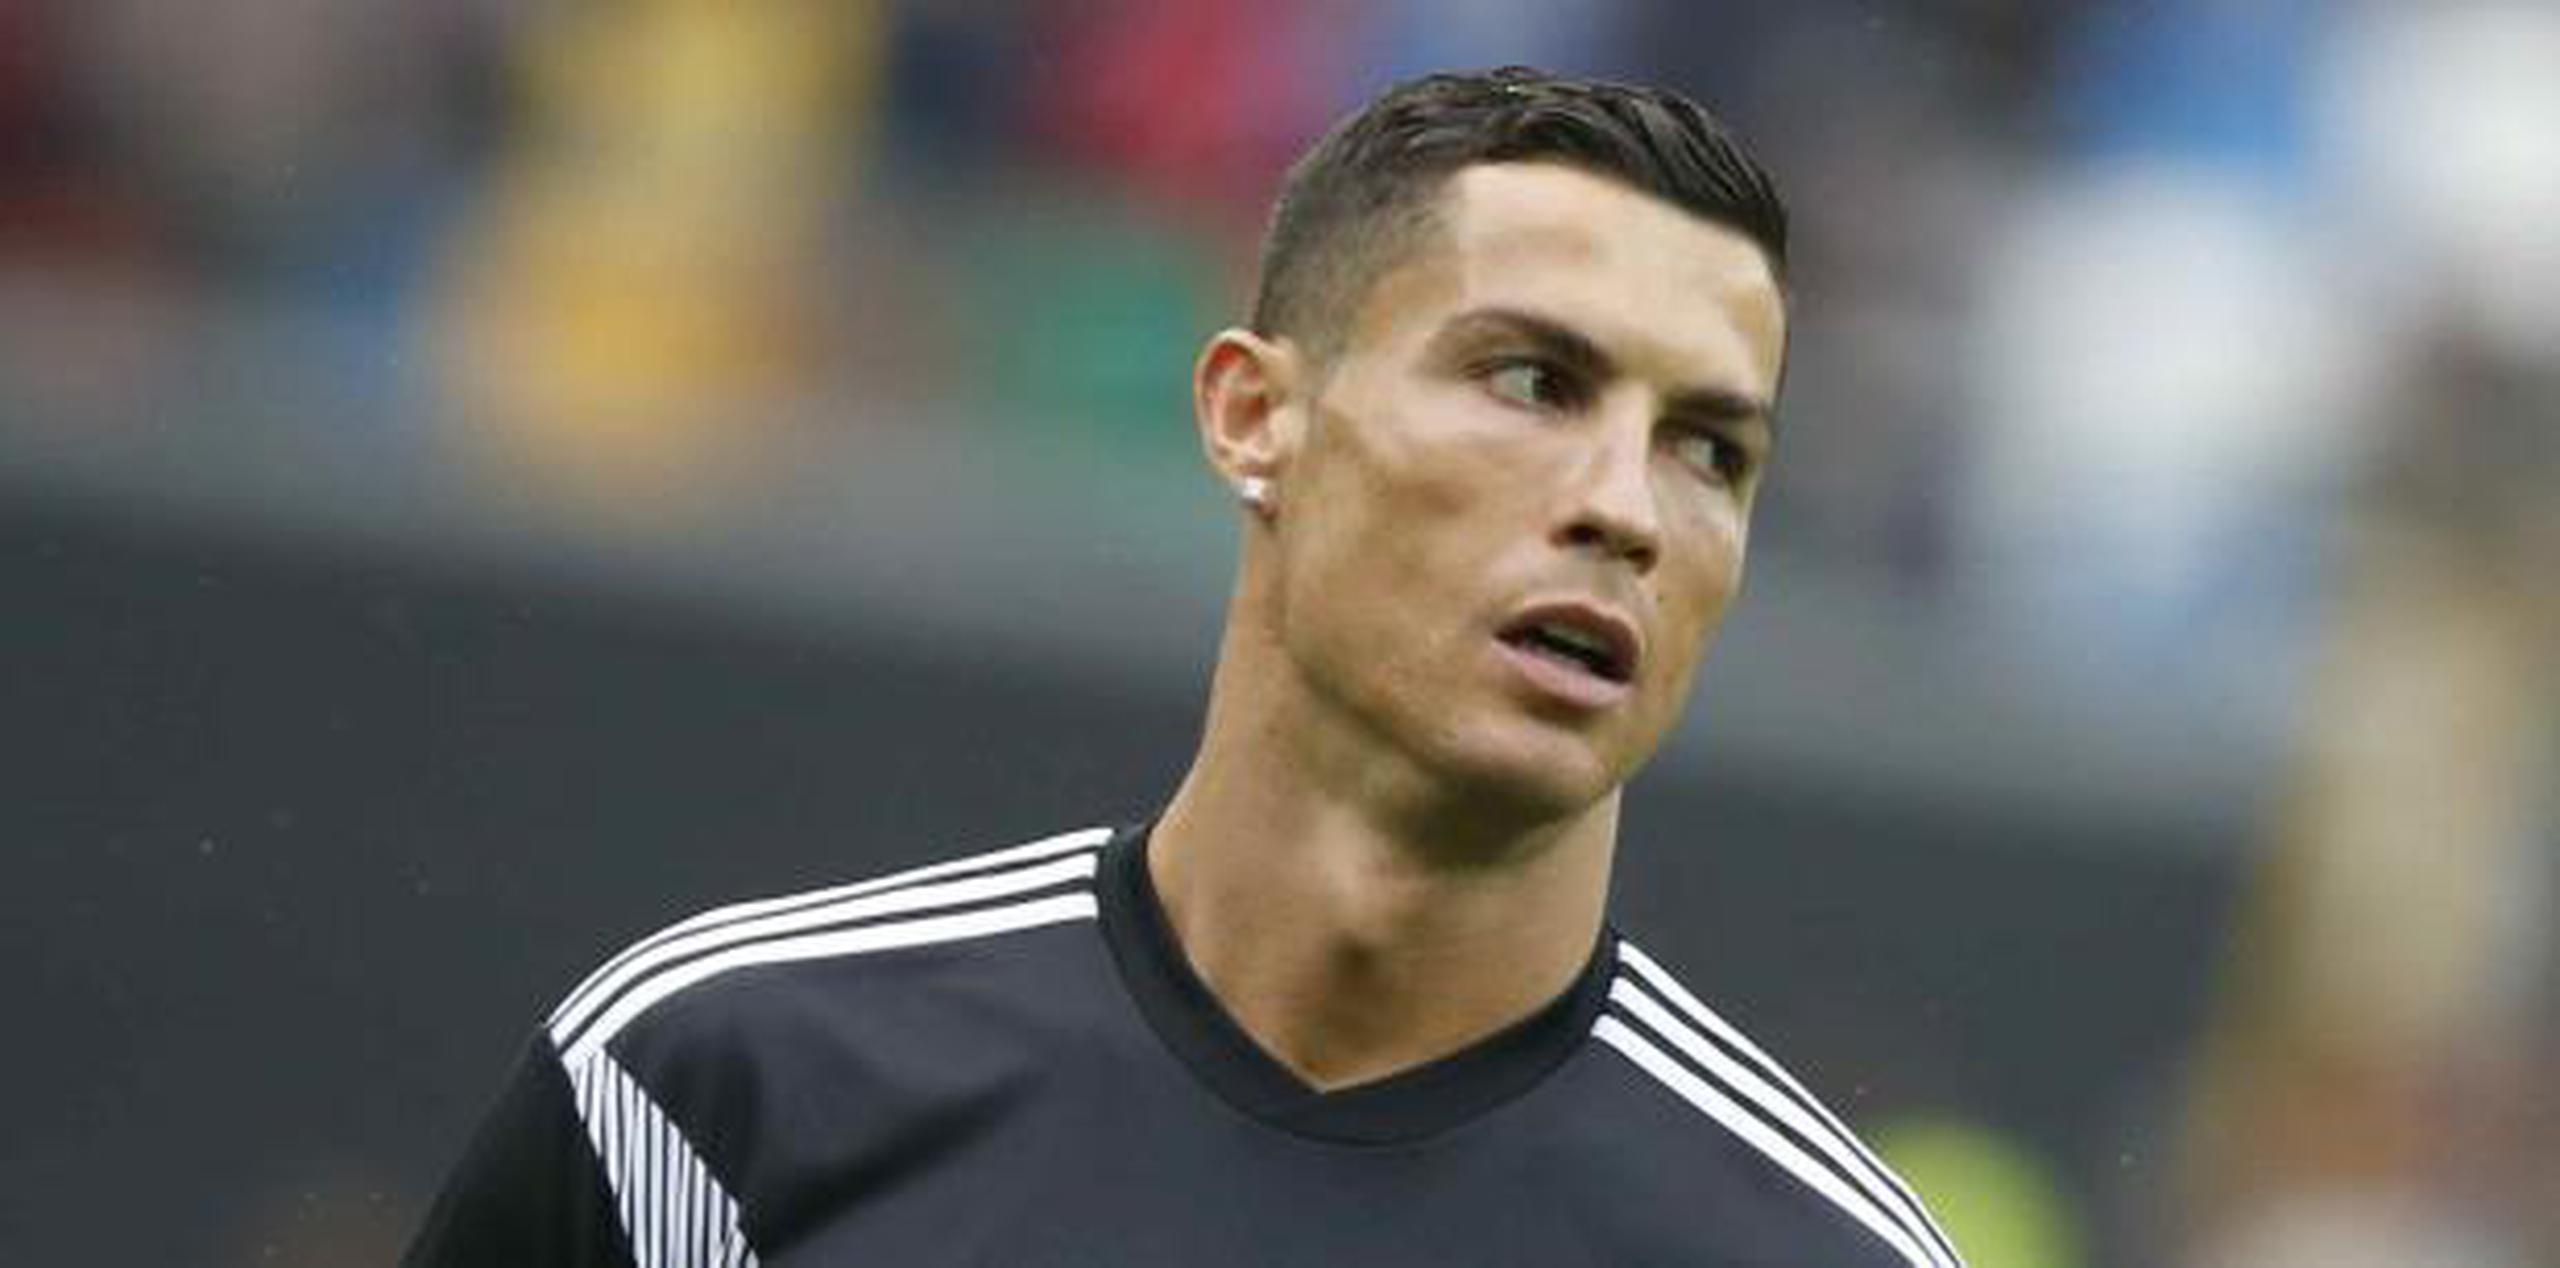 Cristiano juega actualmente para la Juventus de Italia y para la selección de Portugal. (AP / Antonio Calanni)